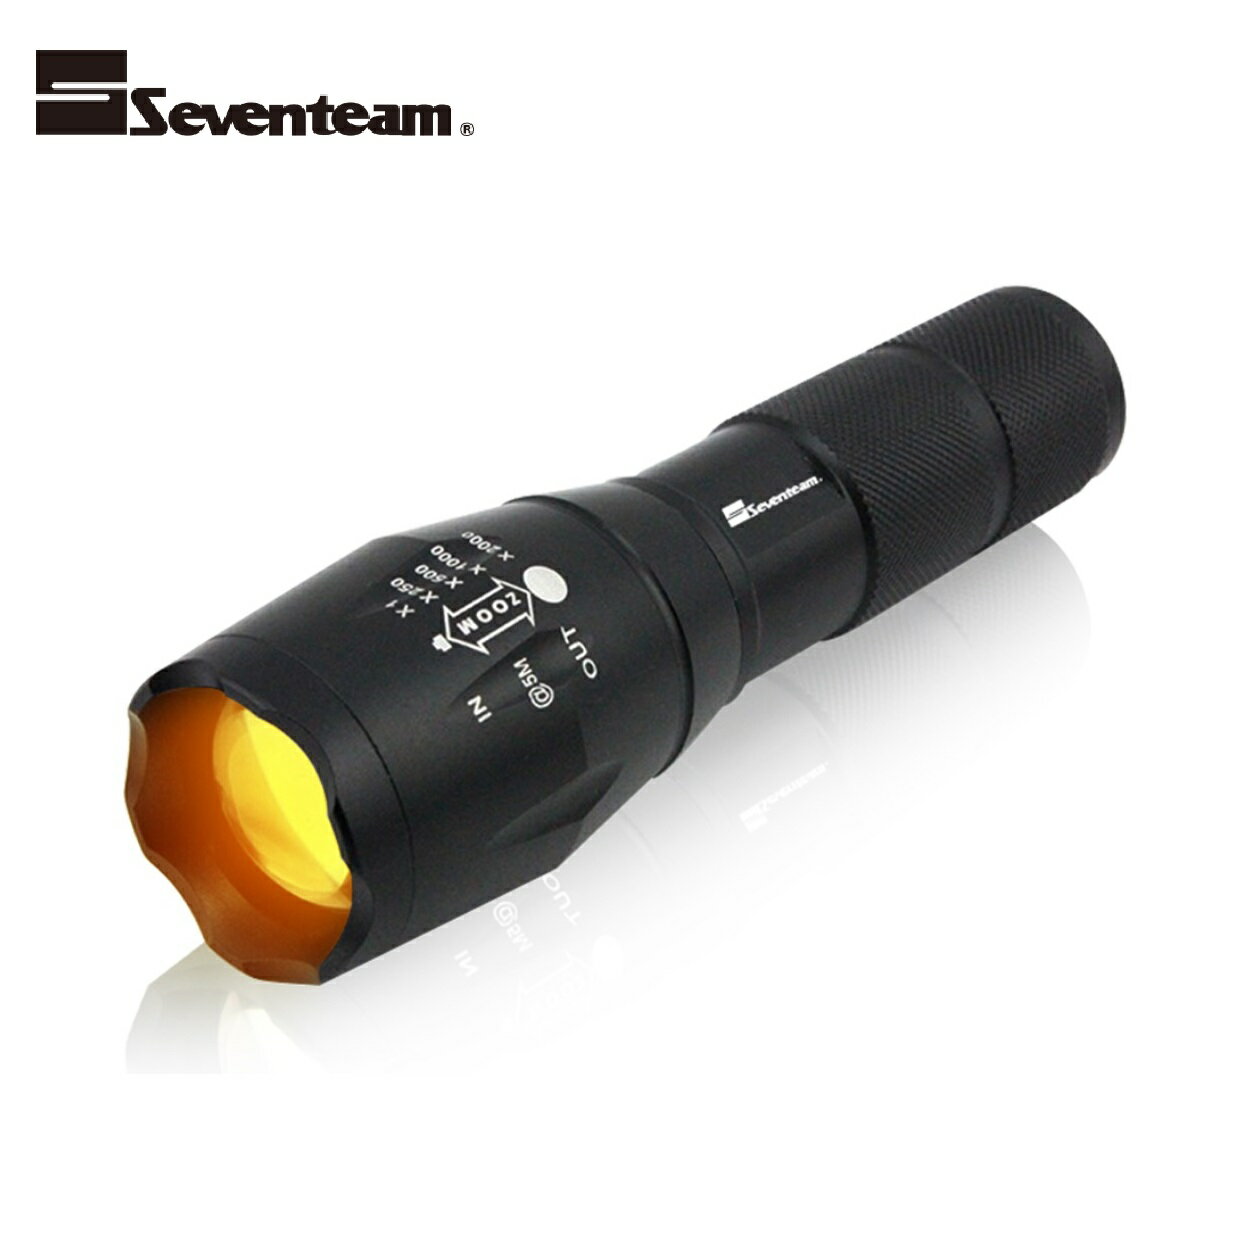 Seventeam七盟 5W LED手電筒驅蚊燈 ST-L05 台灣製造 登山露營 保固一年